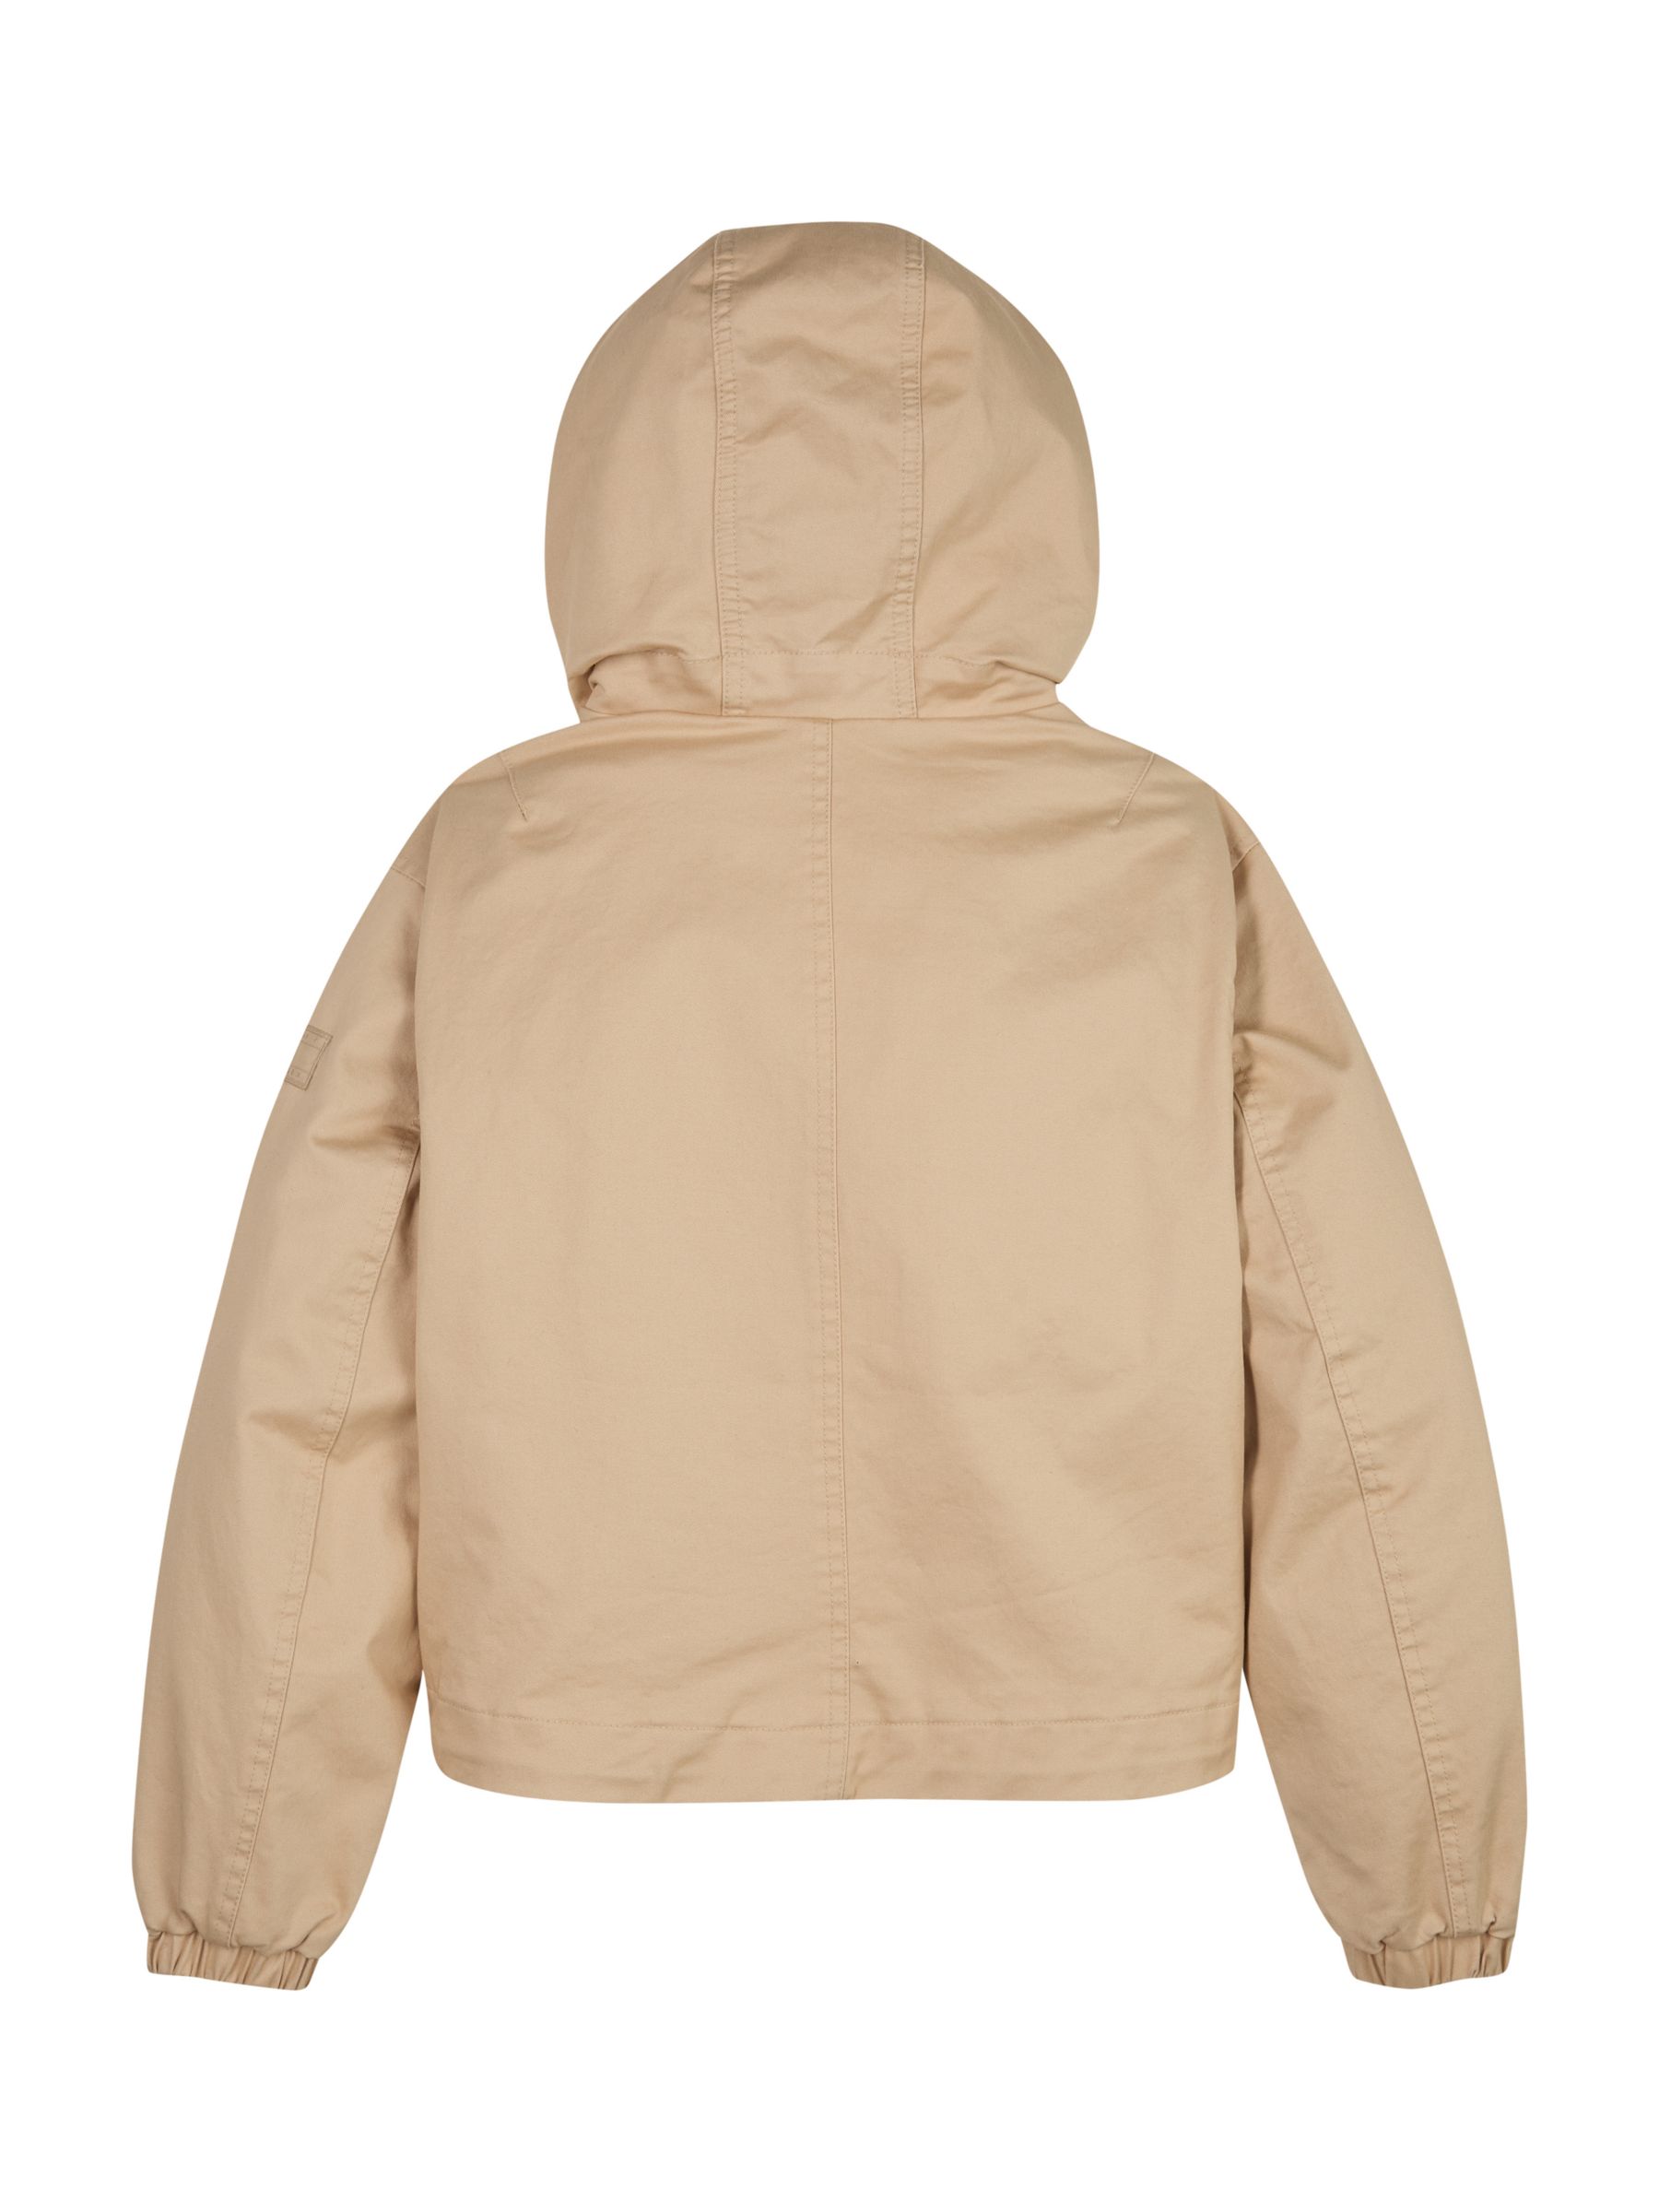 Buy Tommy Hilfiger Kids' Parka Trench Jacket, Natural Online at johnlewis.com